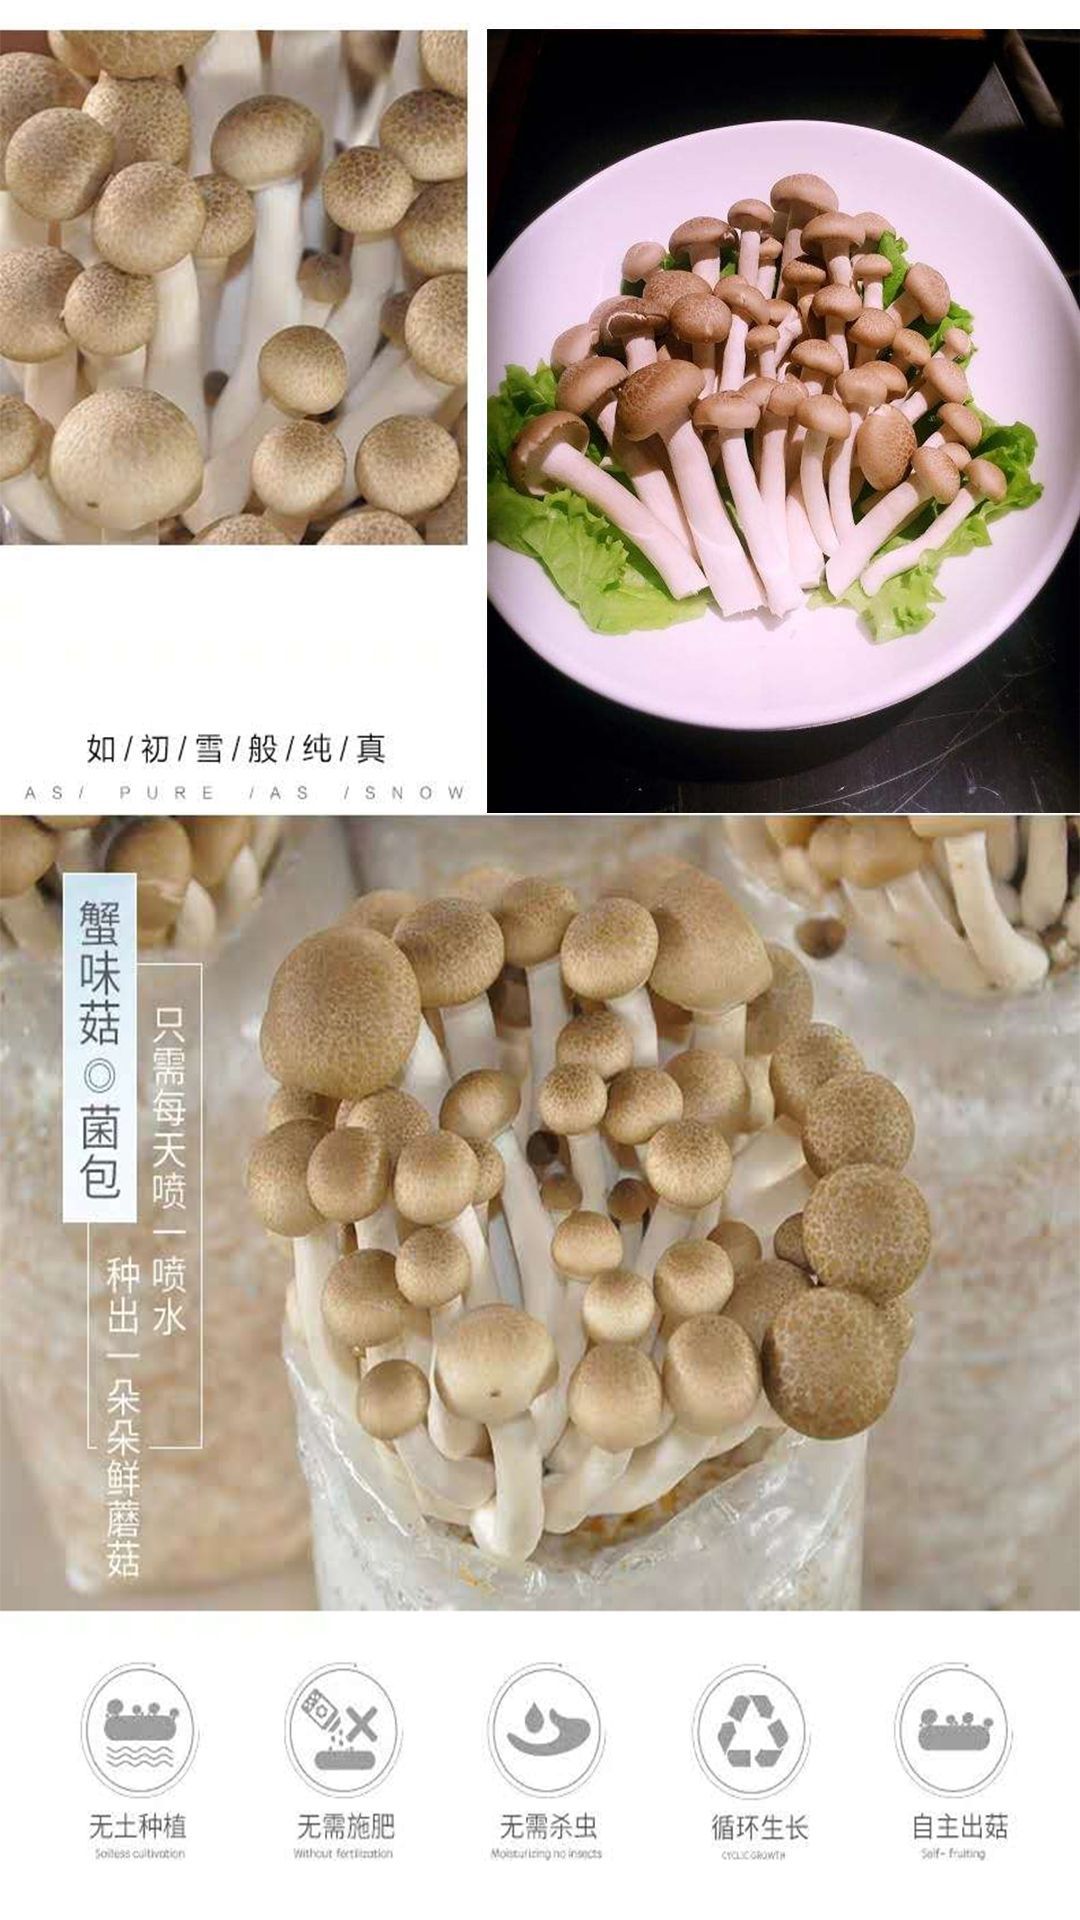 海鲜菇蟹味菇菌包蘑菇菌包菌种盆栽食用菌蘑菇种植菌包菌棒